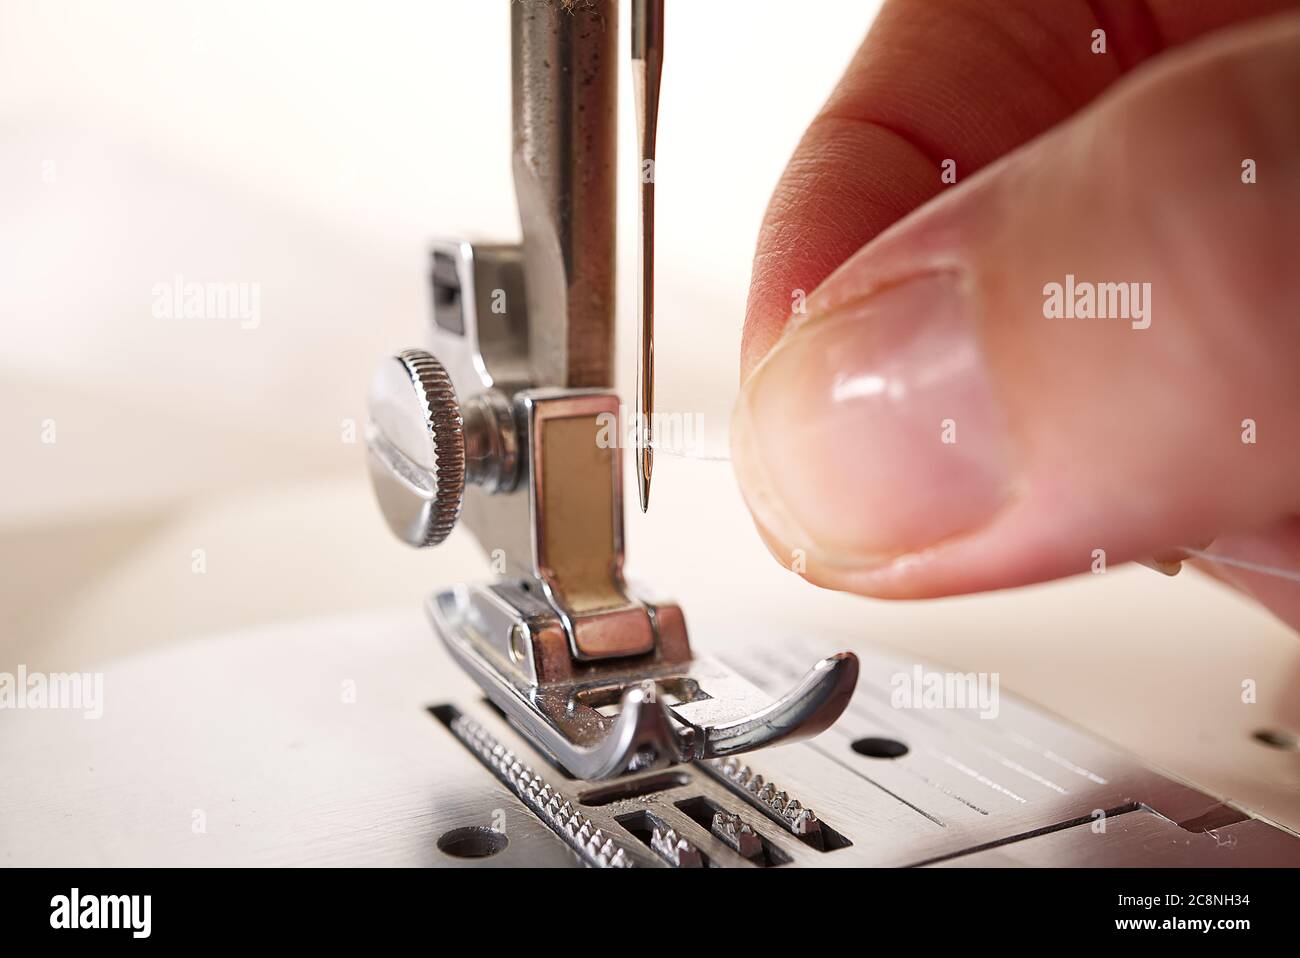 Frau, die eine Nadel auf einer Nähmaschine einfädeln. Nahaufnahme,  selektiver Fokus Stockfotografie - Alamy